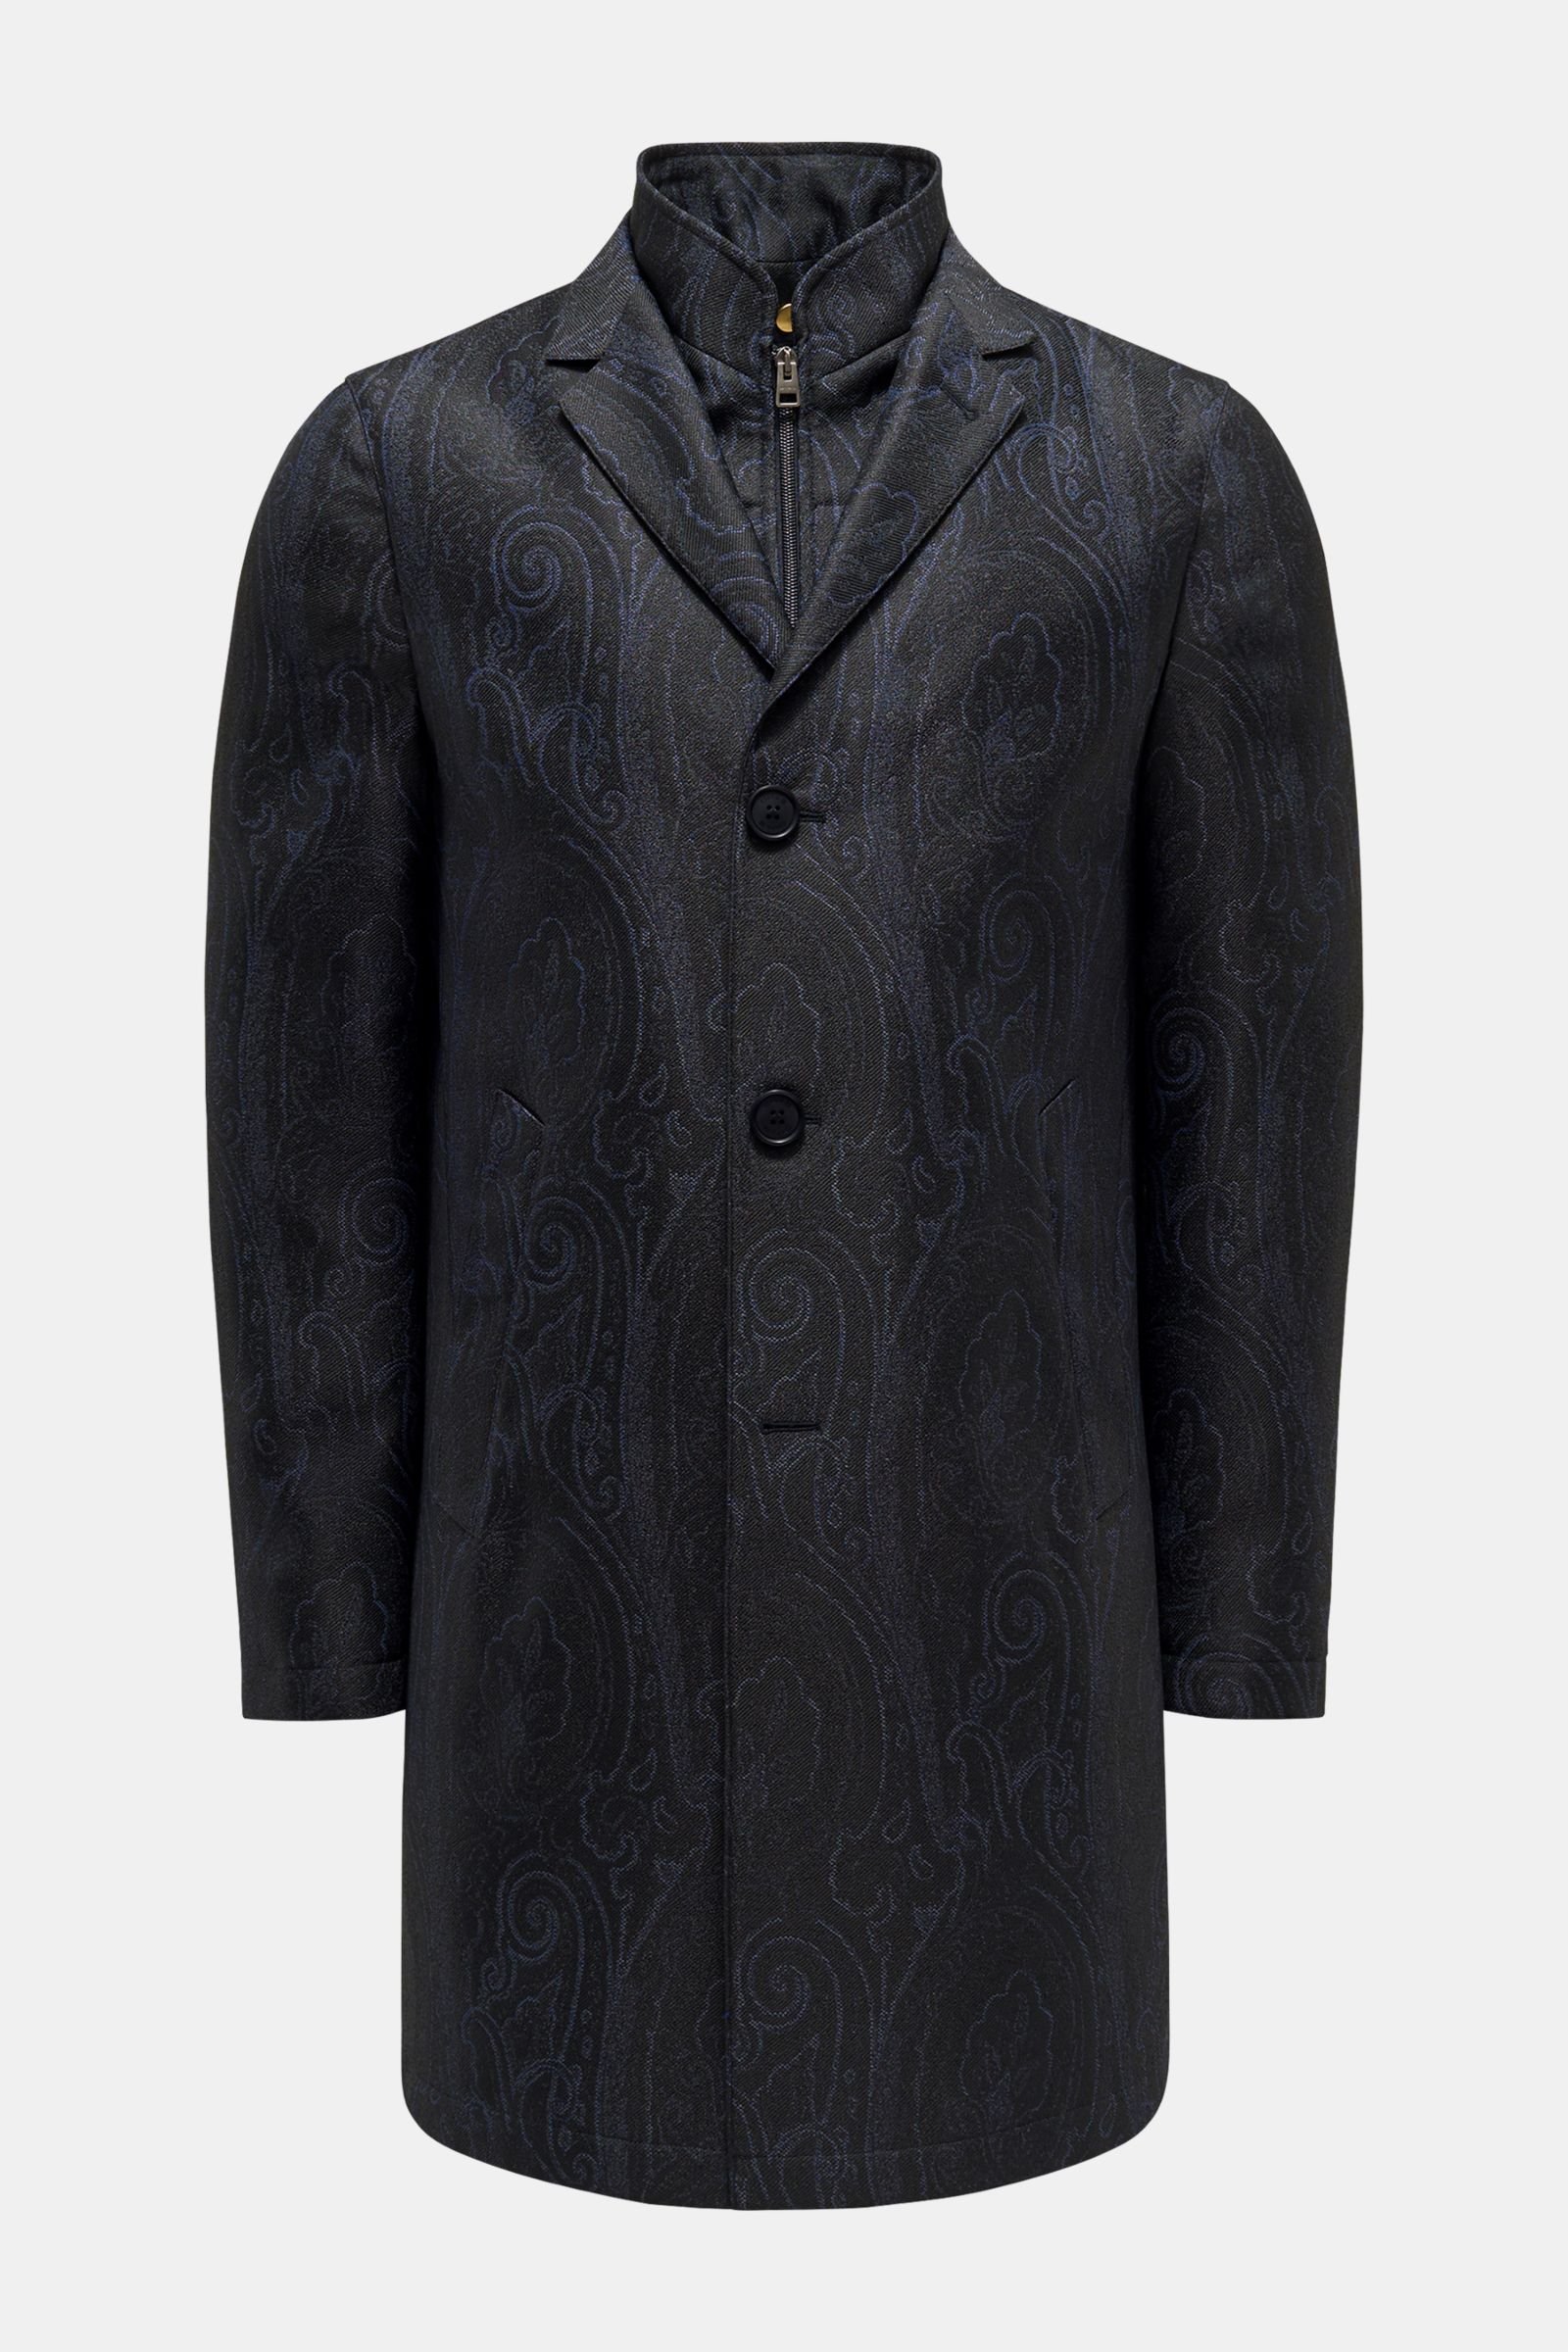 Coat dark navy patterned